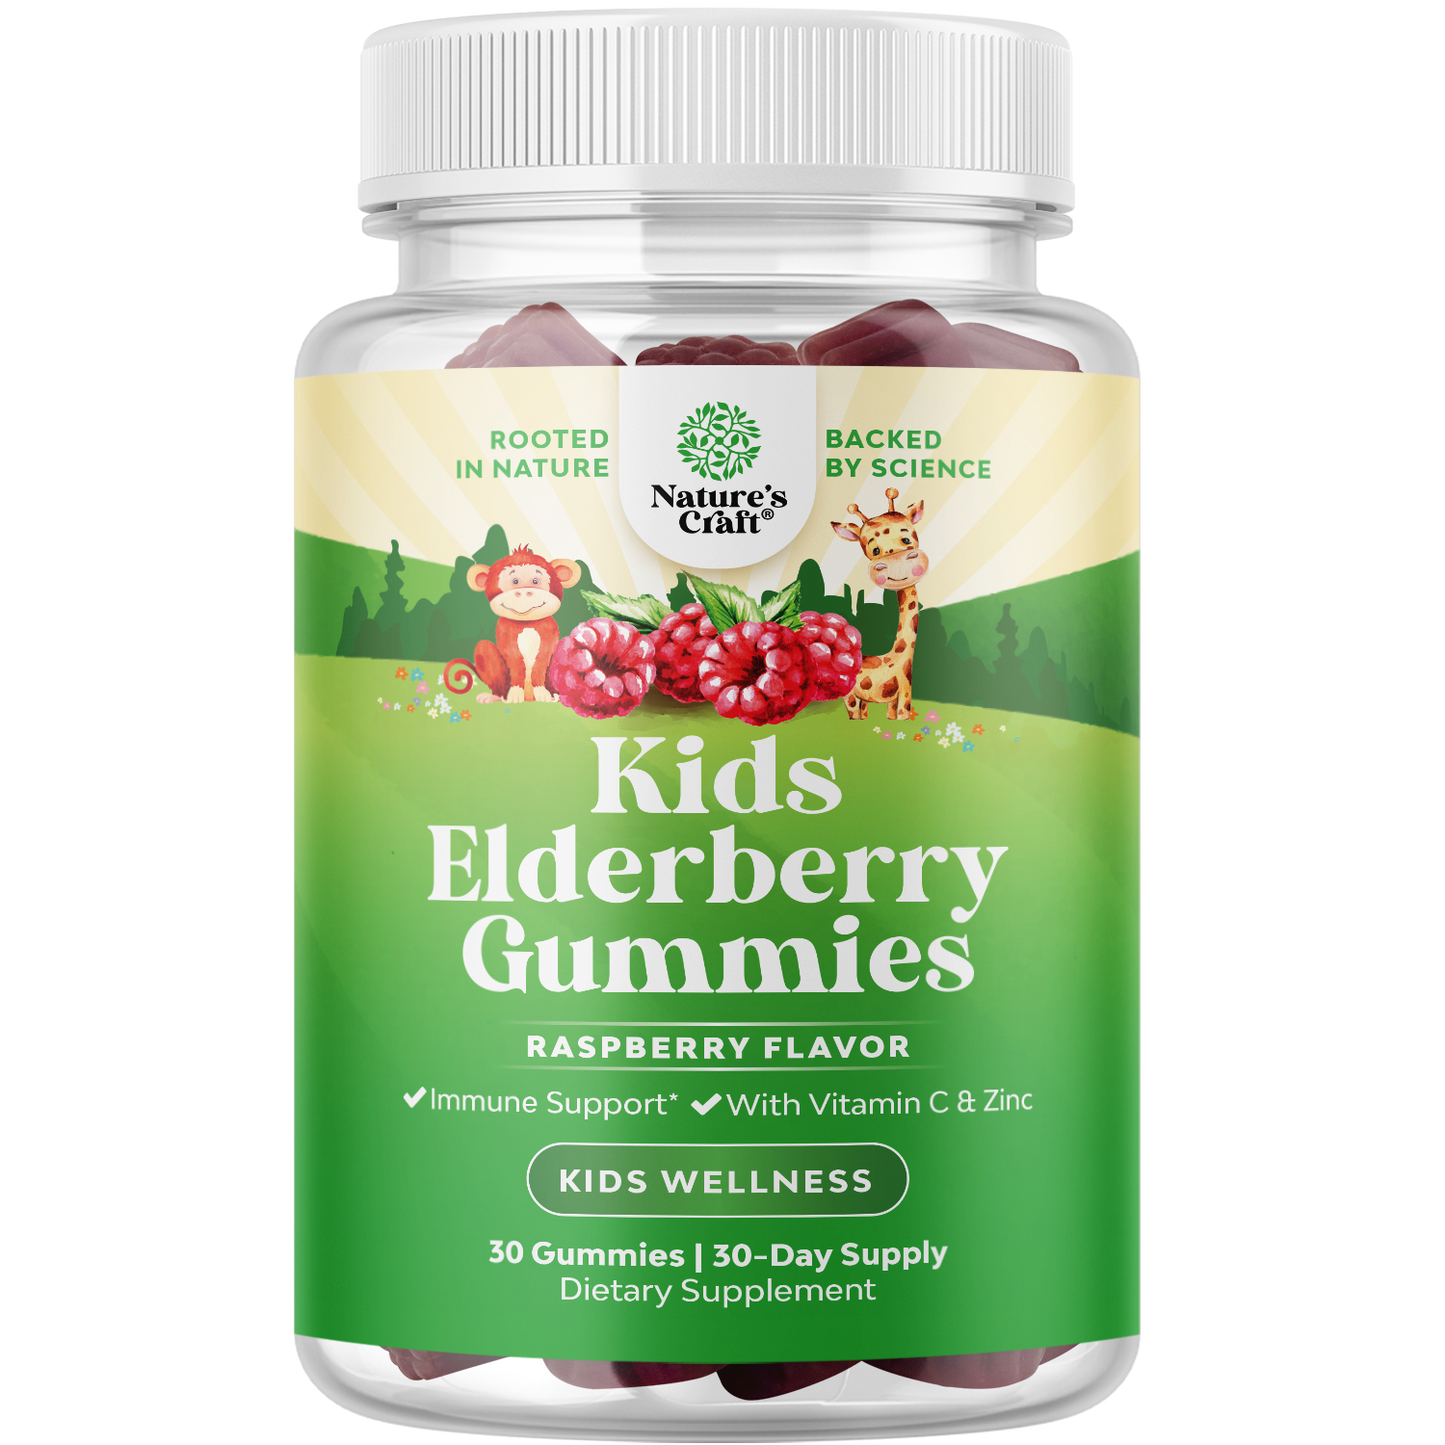 Elderberry for Kids - 30 Gummies - Nature's Craft